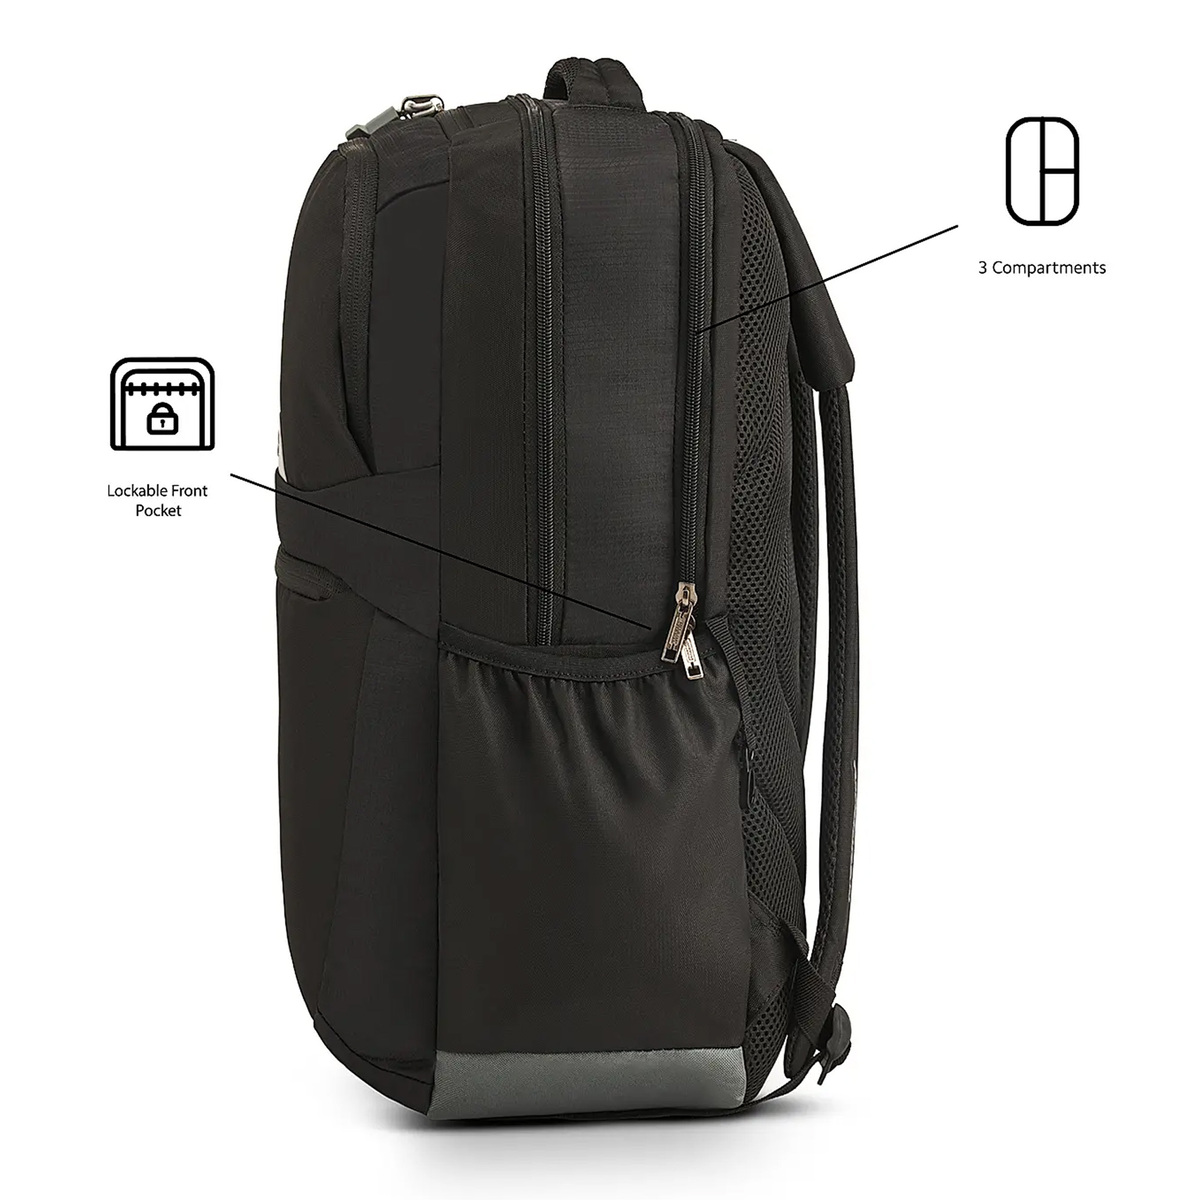 American Tourister Backpack Brett Q15 BTS  Black